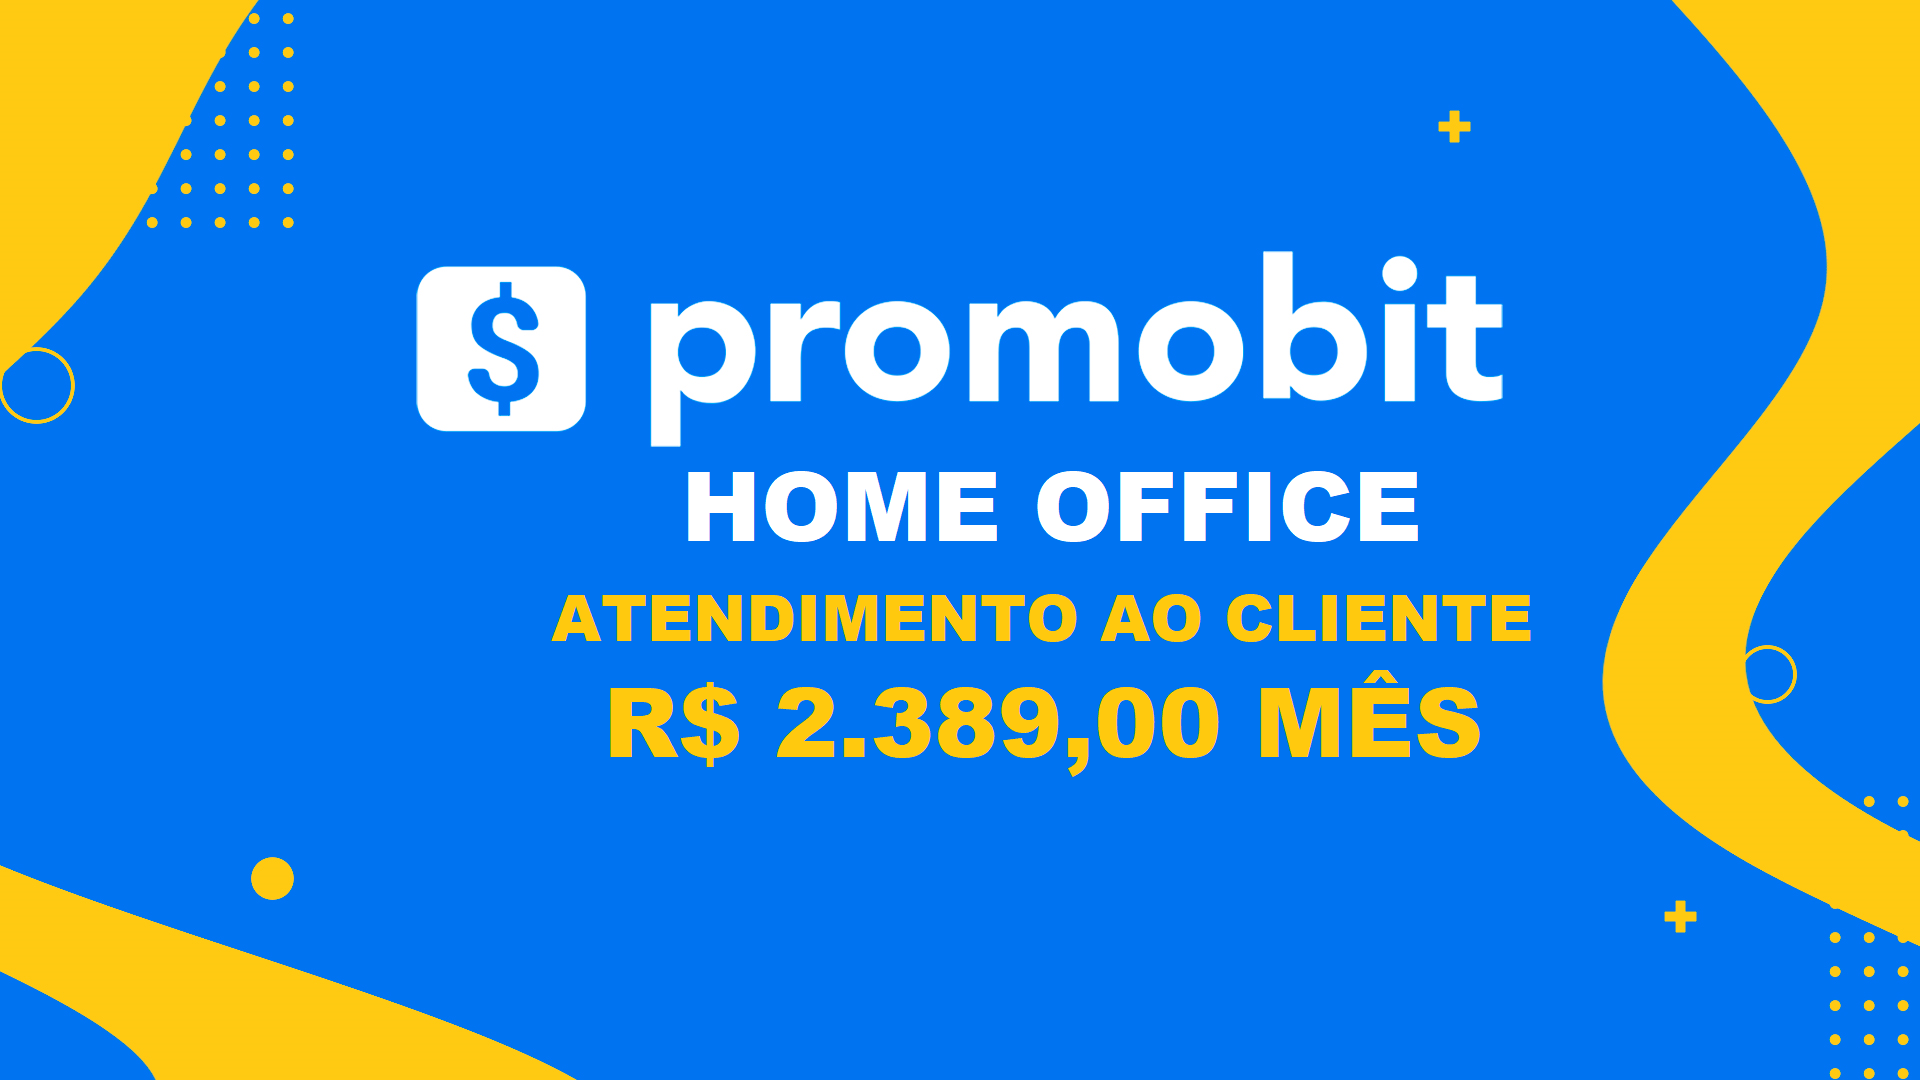 Promobit abre vagas HOME OFFICE para Atendimento ao Cliente com Salário de R$ 2.389,00